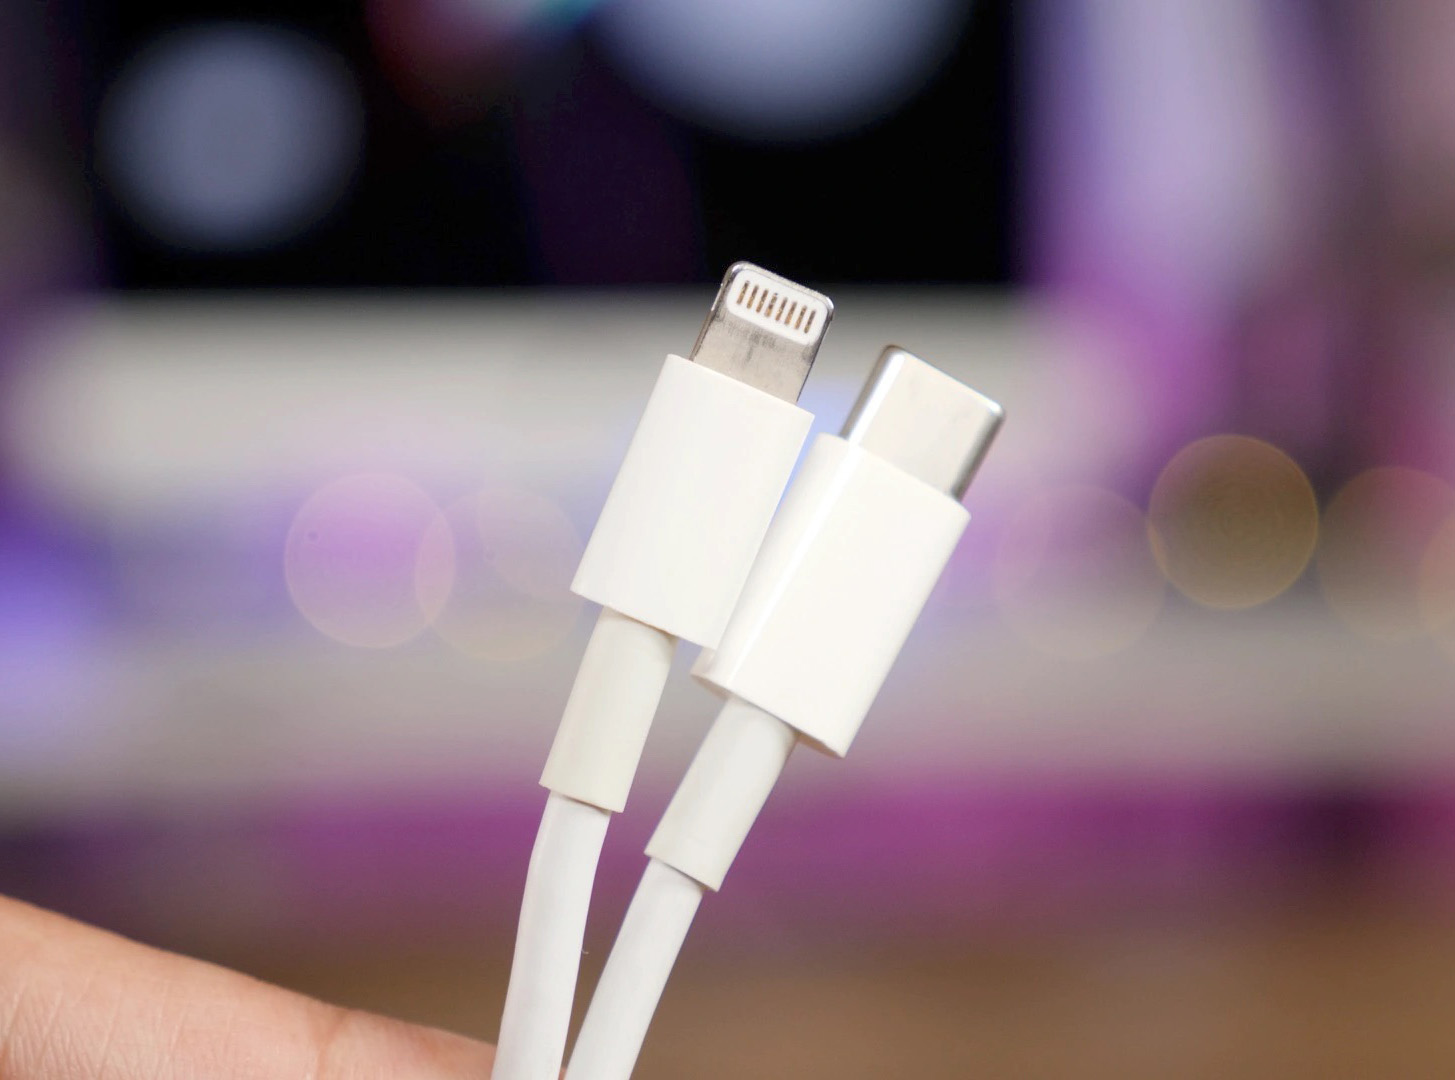 傳言 iPhone 14 Pro 將配備更快的 USB 3.0 Lightning 接口